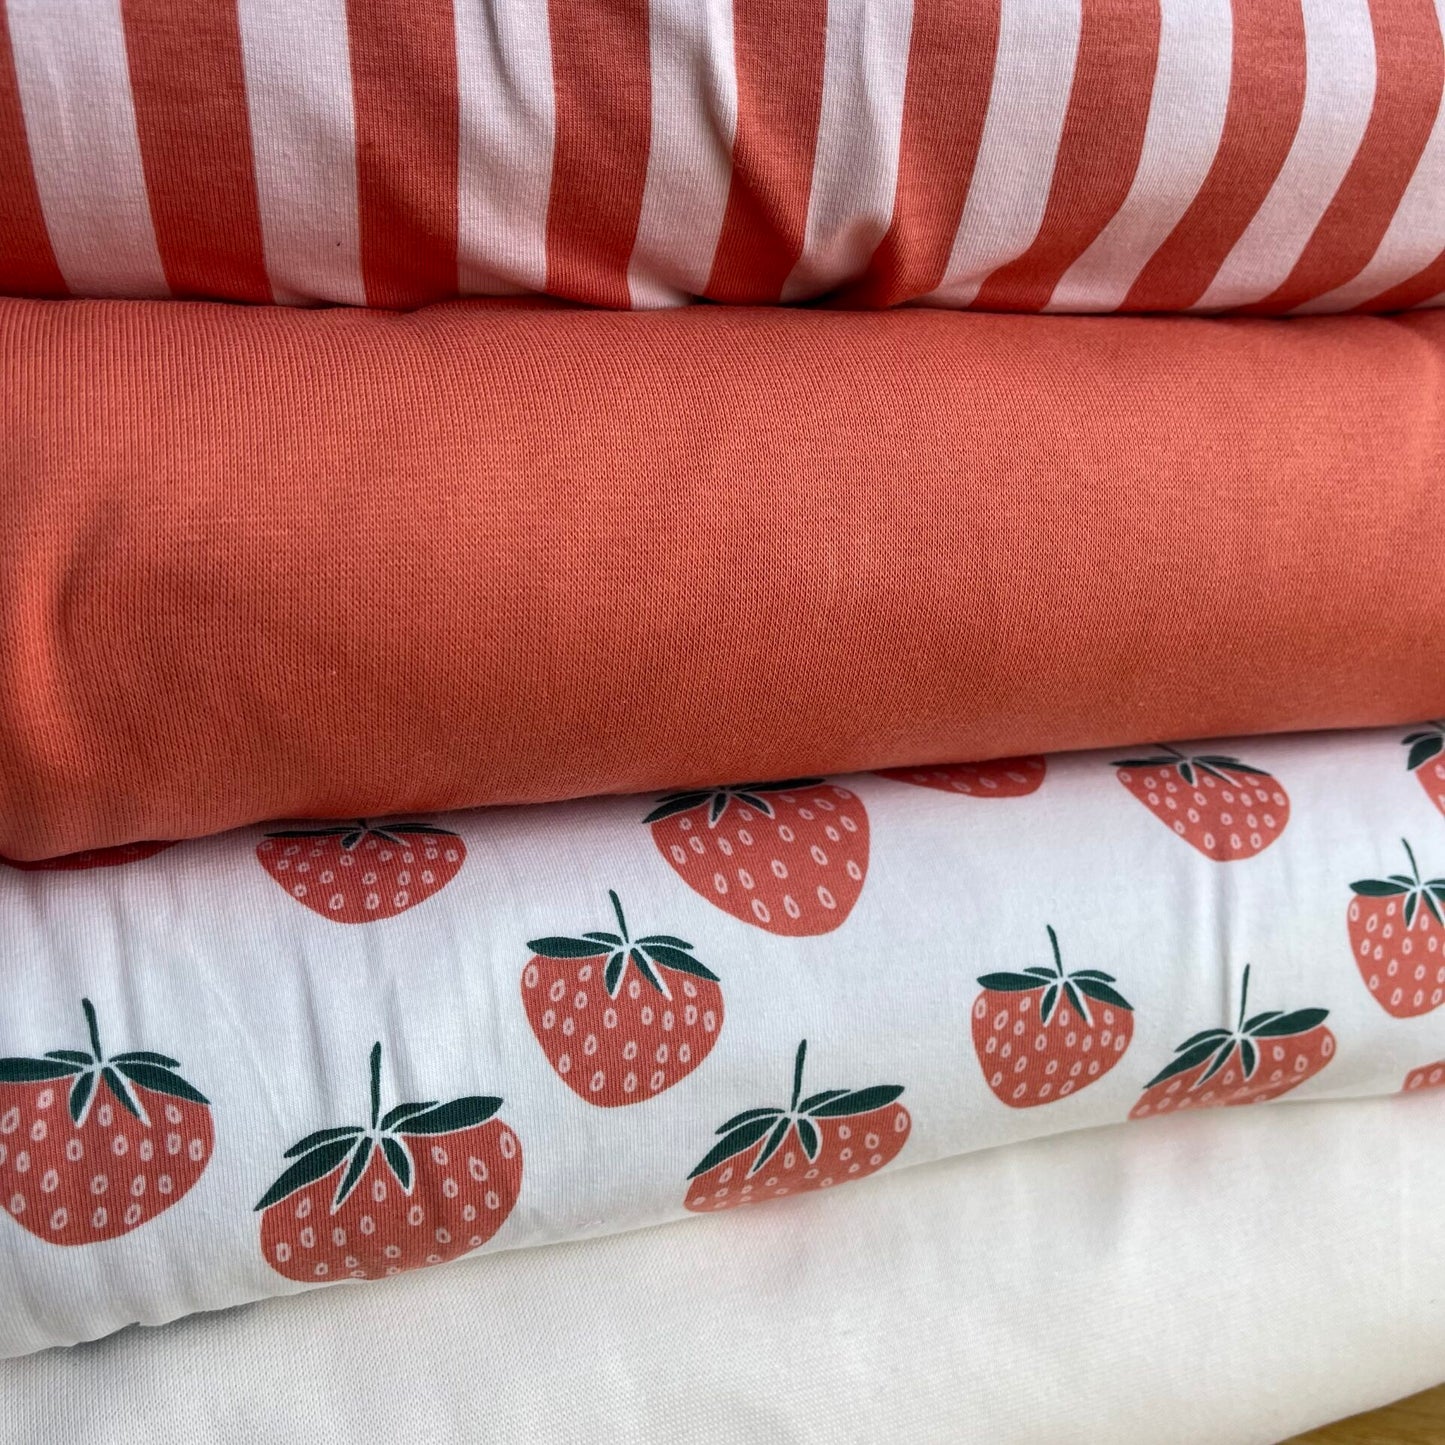 
                  
                    Strawberries Creme – Jersey – Elvelyckan
                  
                